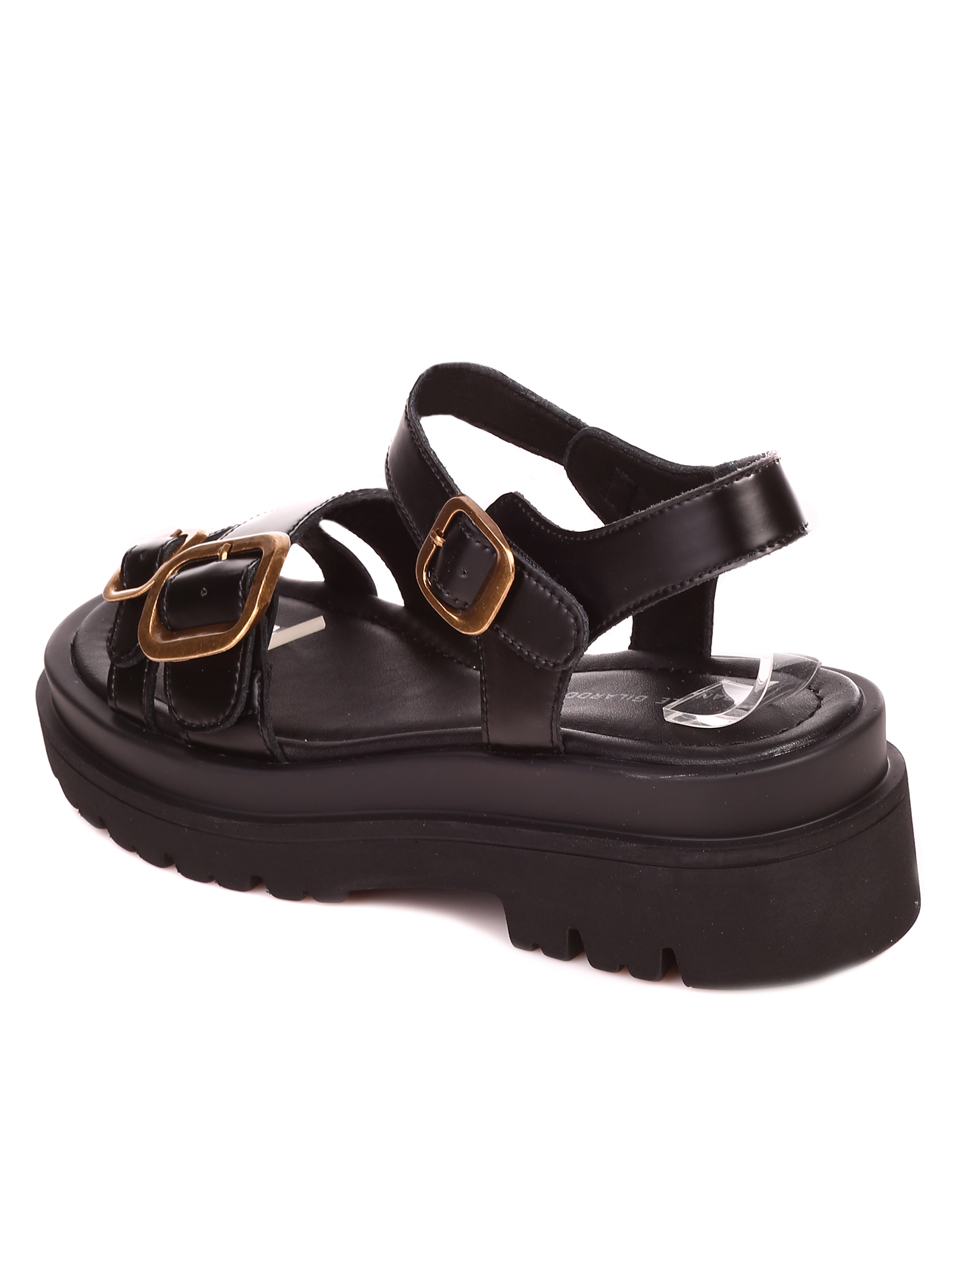 Ежедневни дамски сандали на платформа от естествена кожа 4AF-22183 black